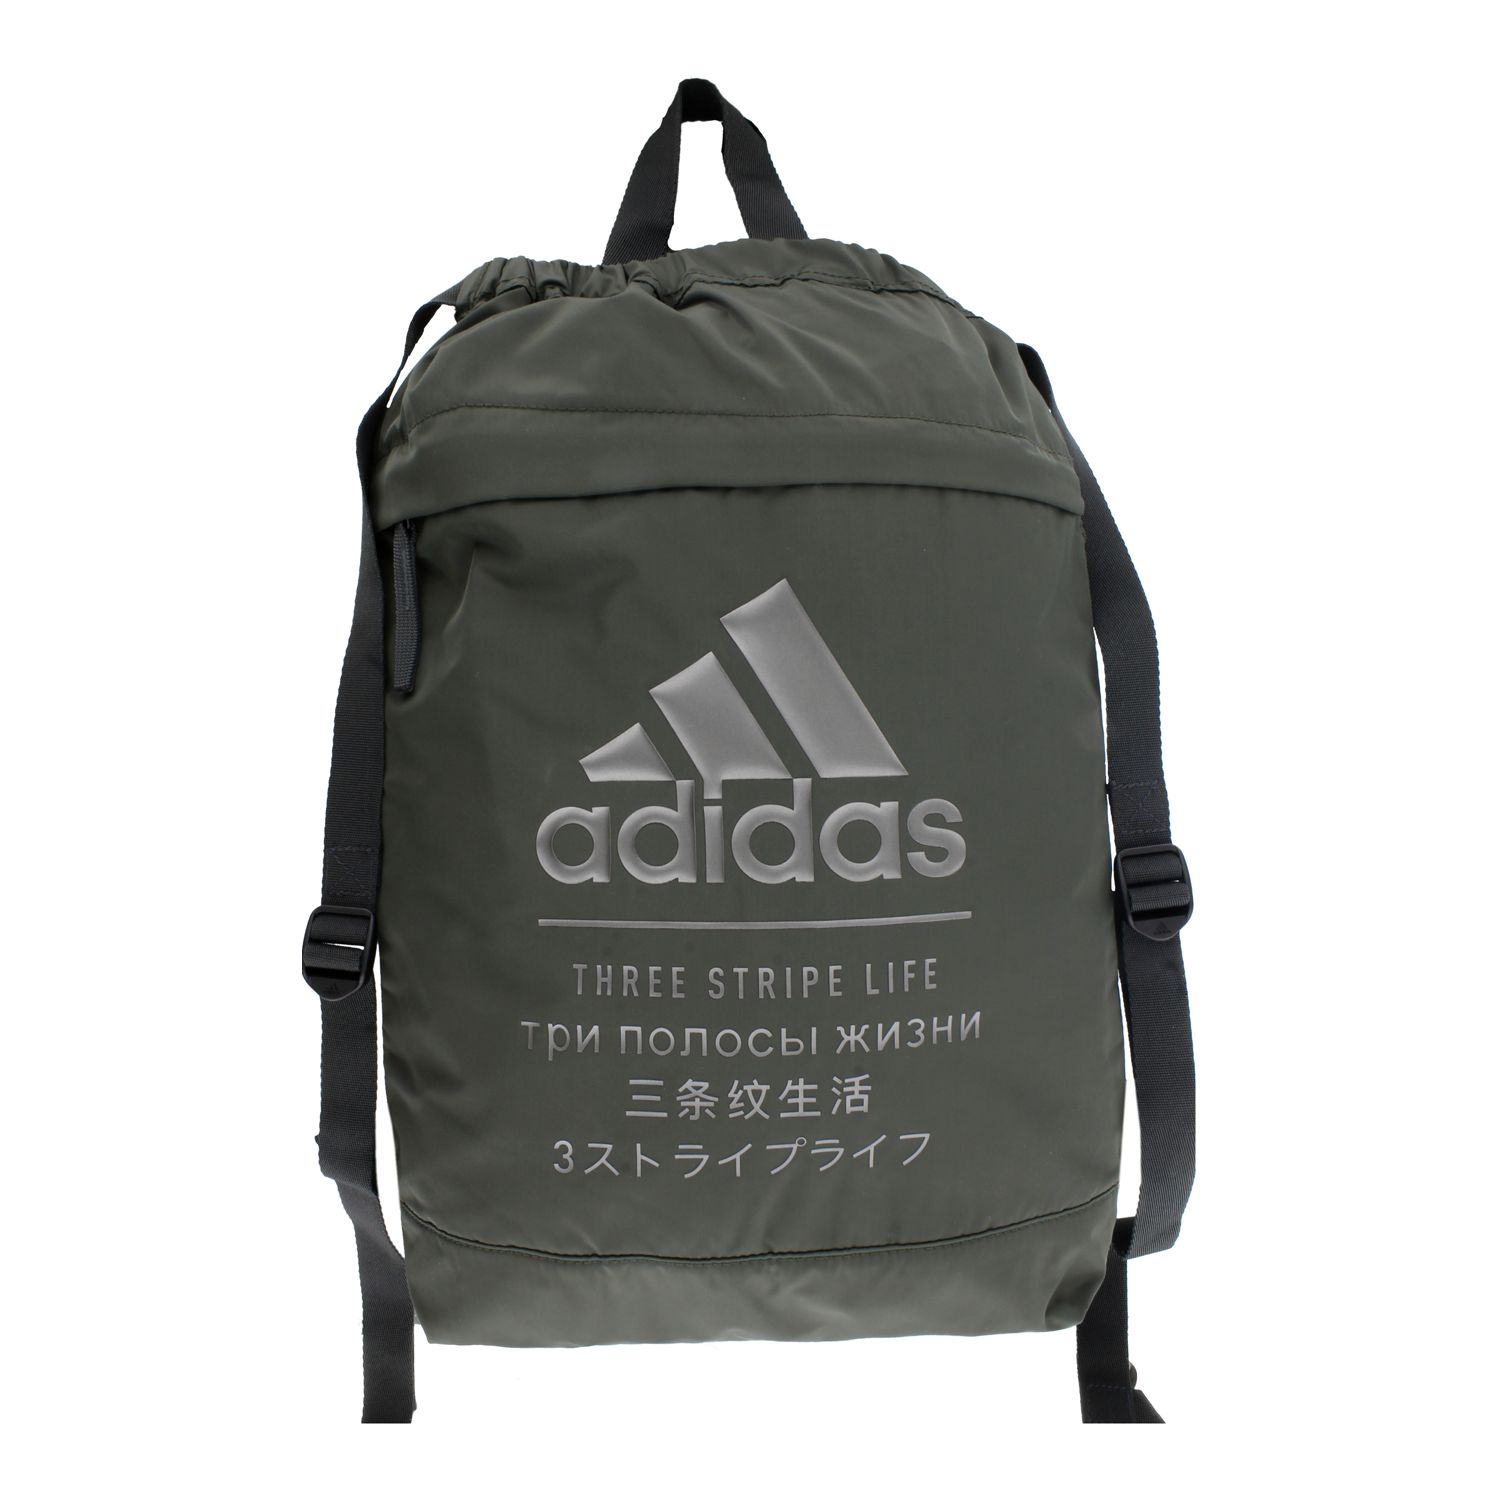 adidas drawstring backpacks